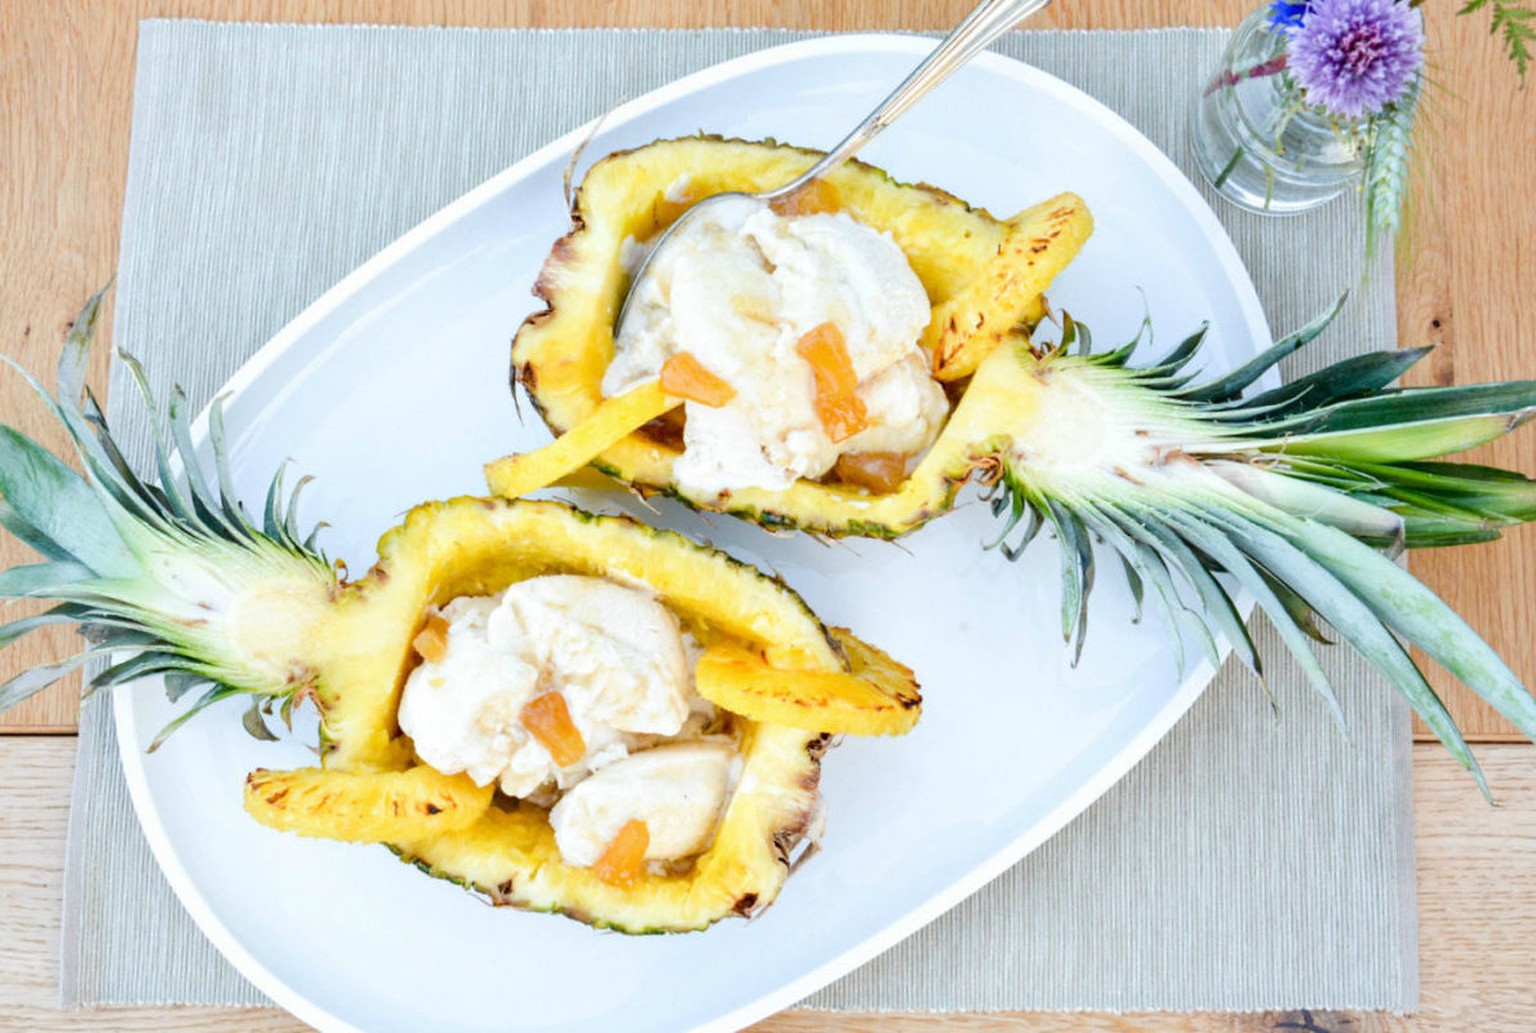 gegrillte ananas mit kokoseis glace frucht essen food nachspeise dessert https://foodistas.de/wp-content/uploads/2015/06/Gegrillte-Ananas-mit-Kokoseis-Header-e1434443504568-800x1190.jpg